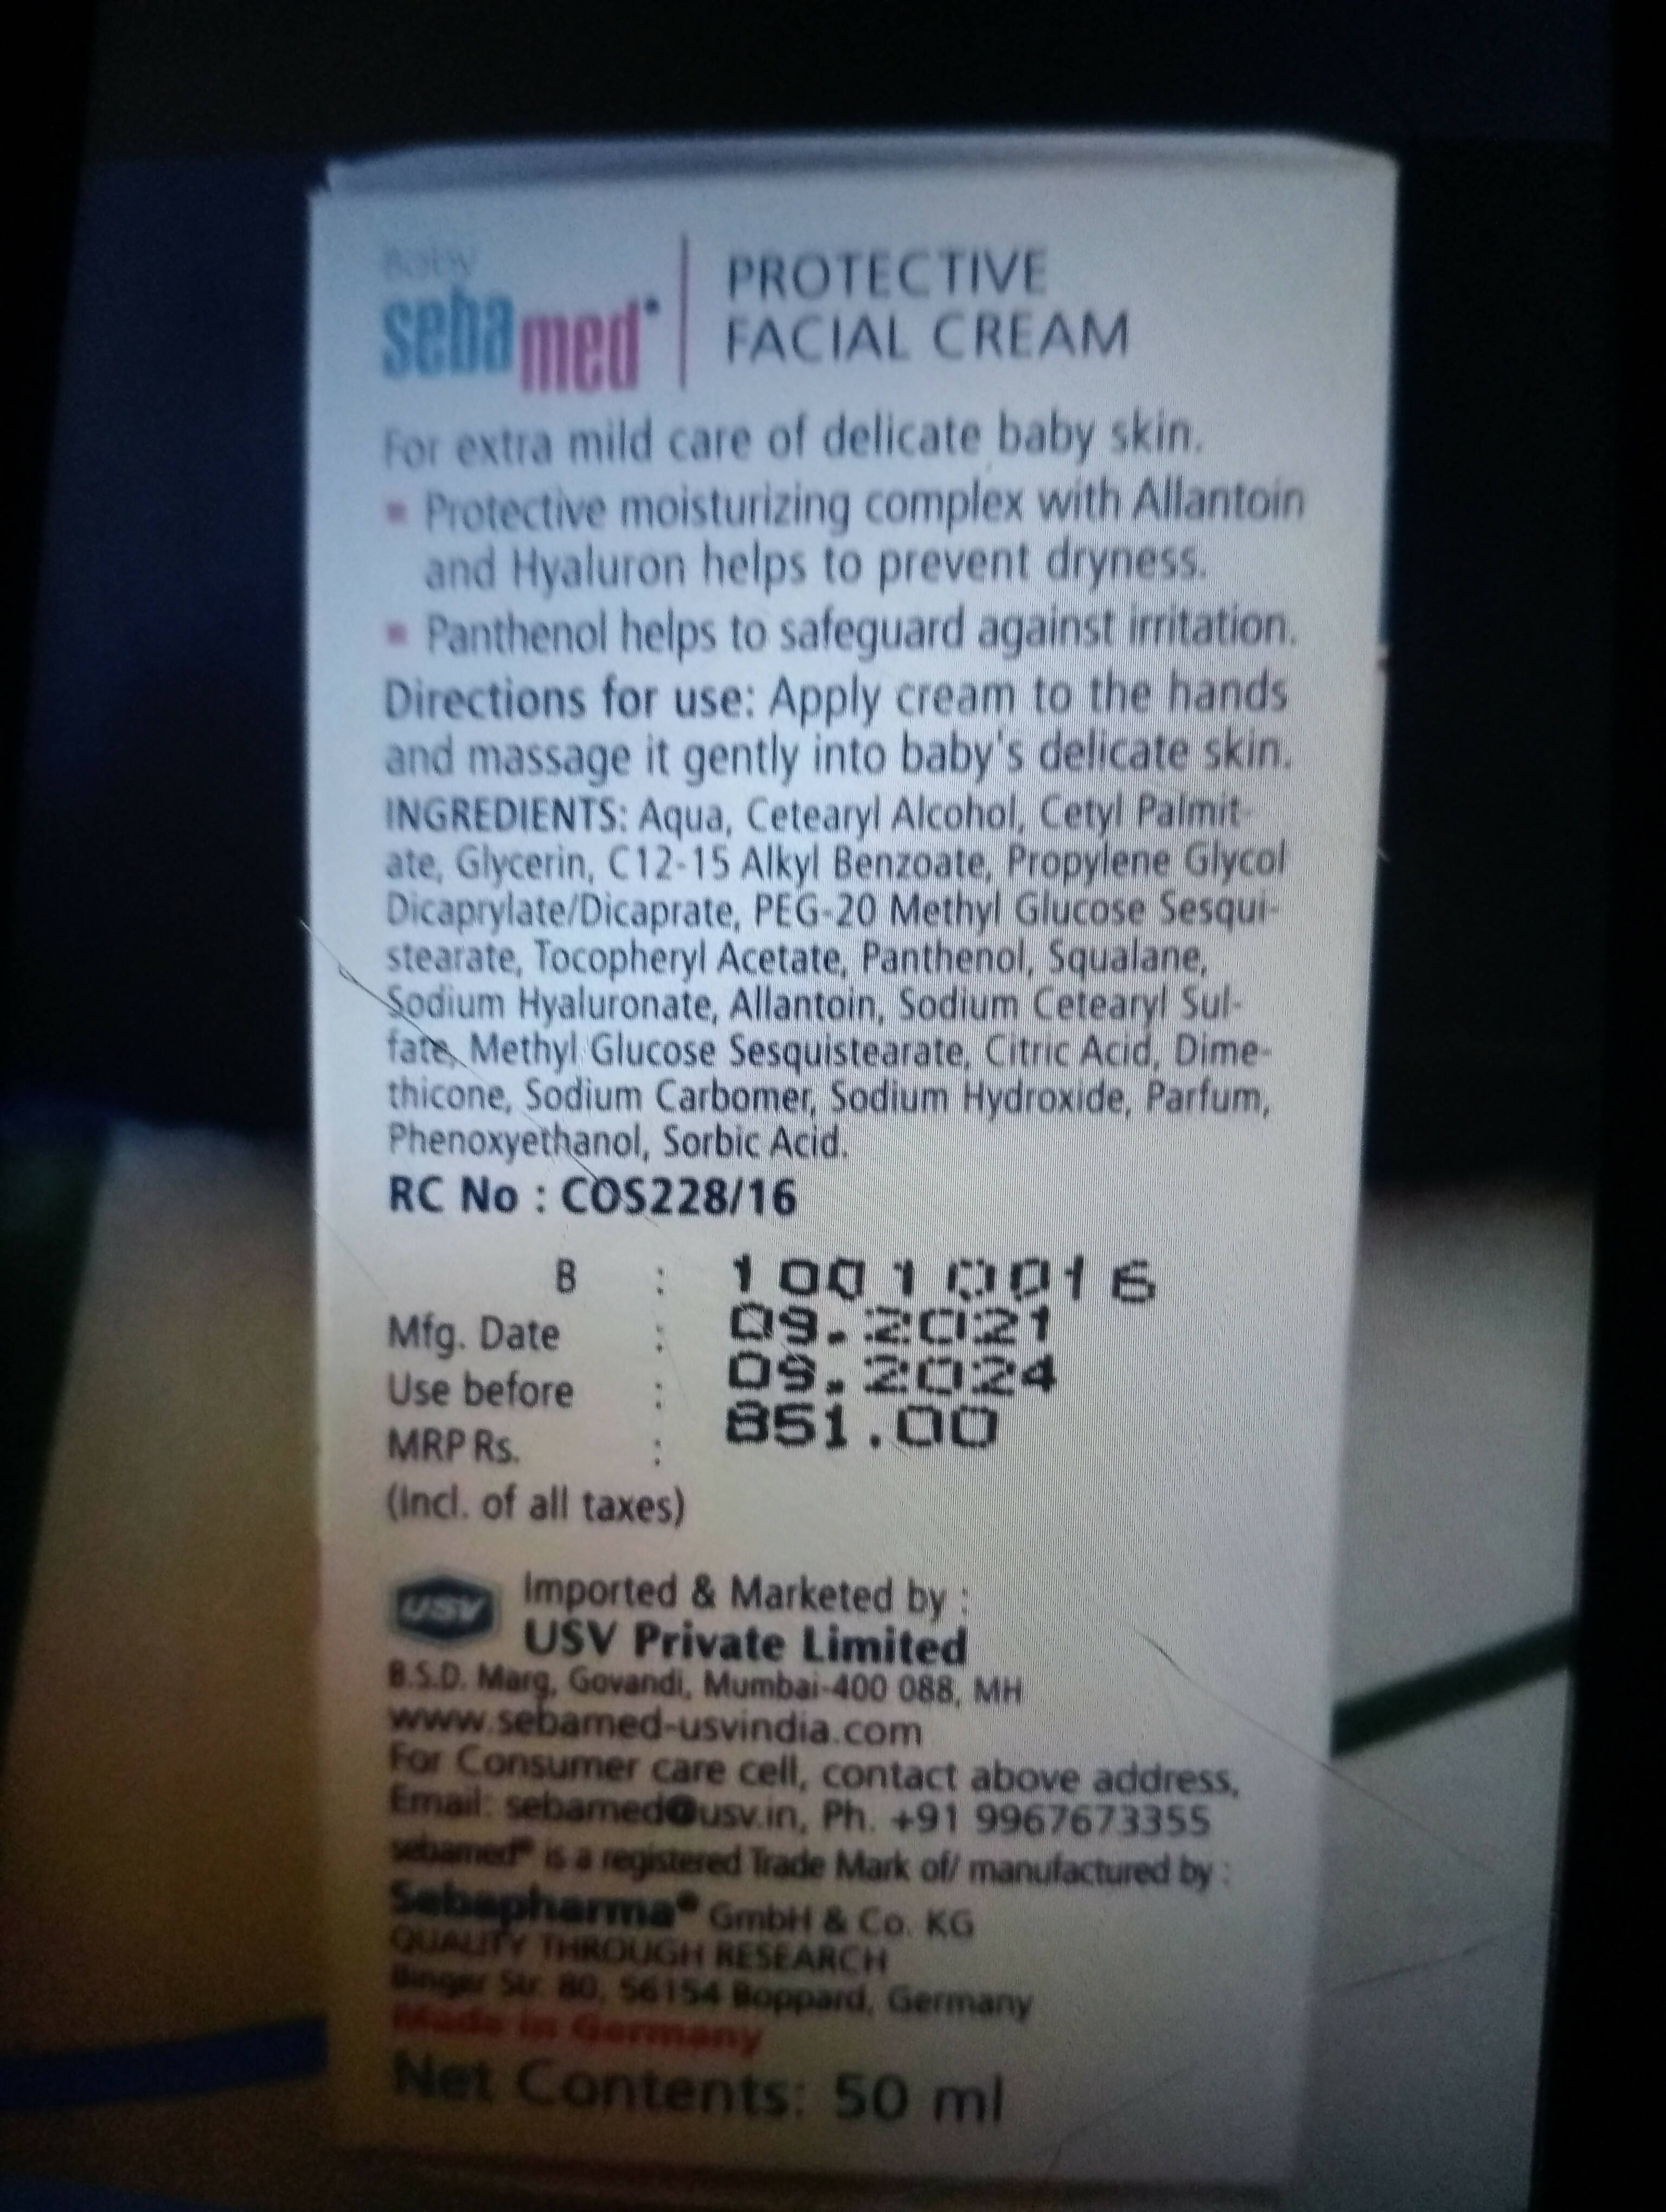 SEBA MED Protective facial cream